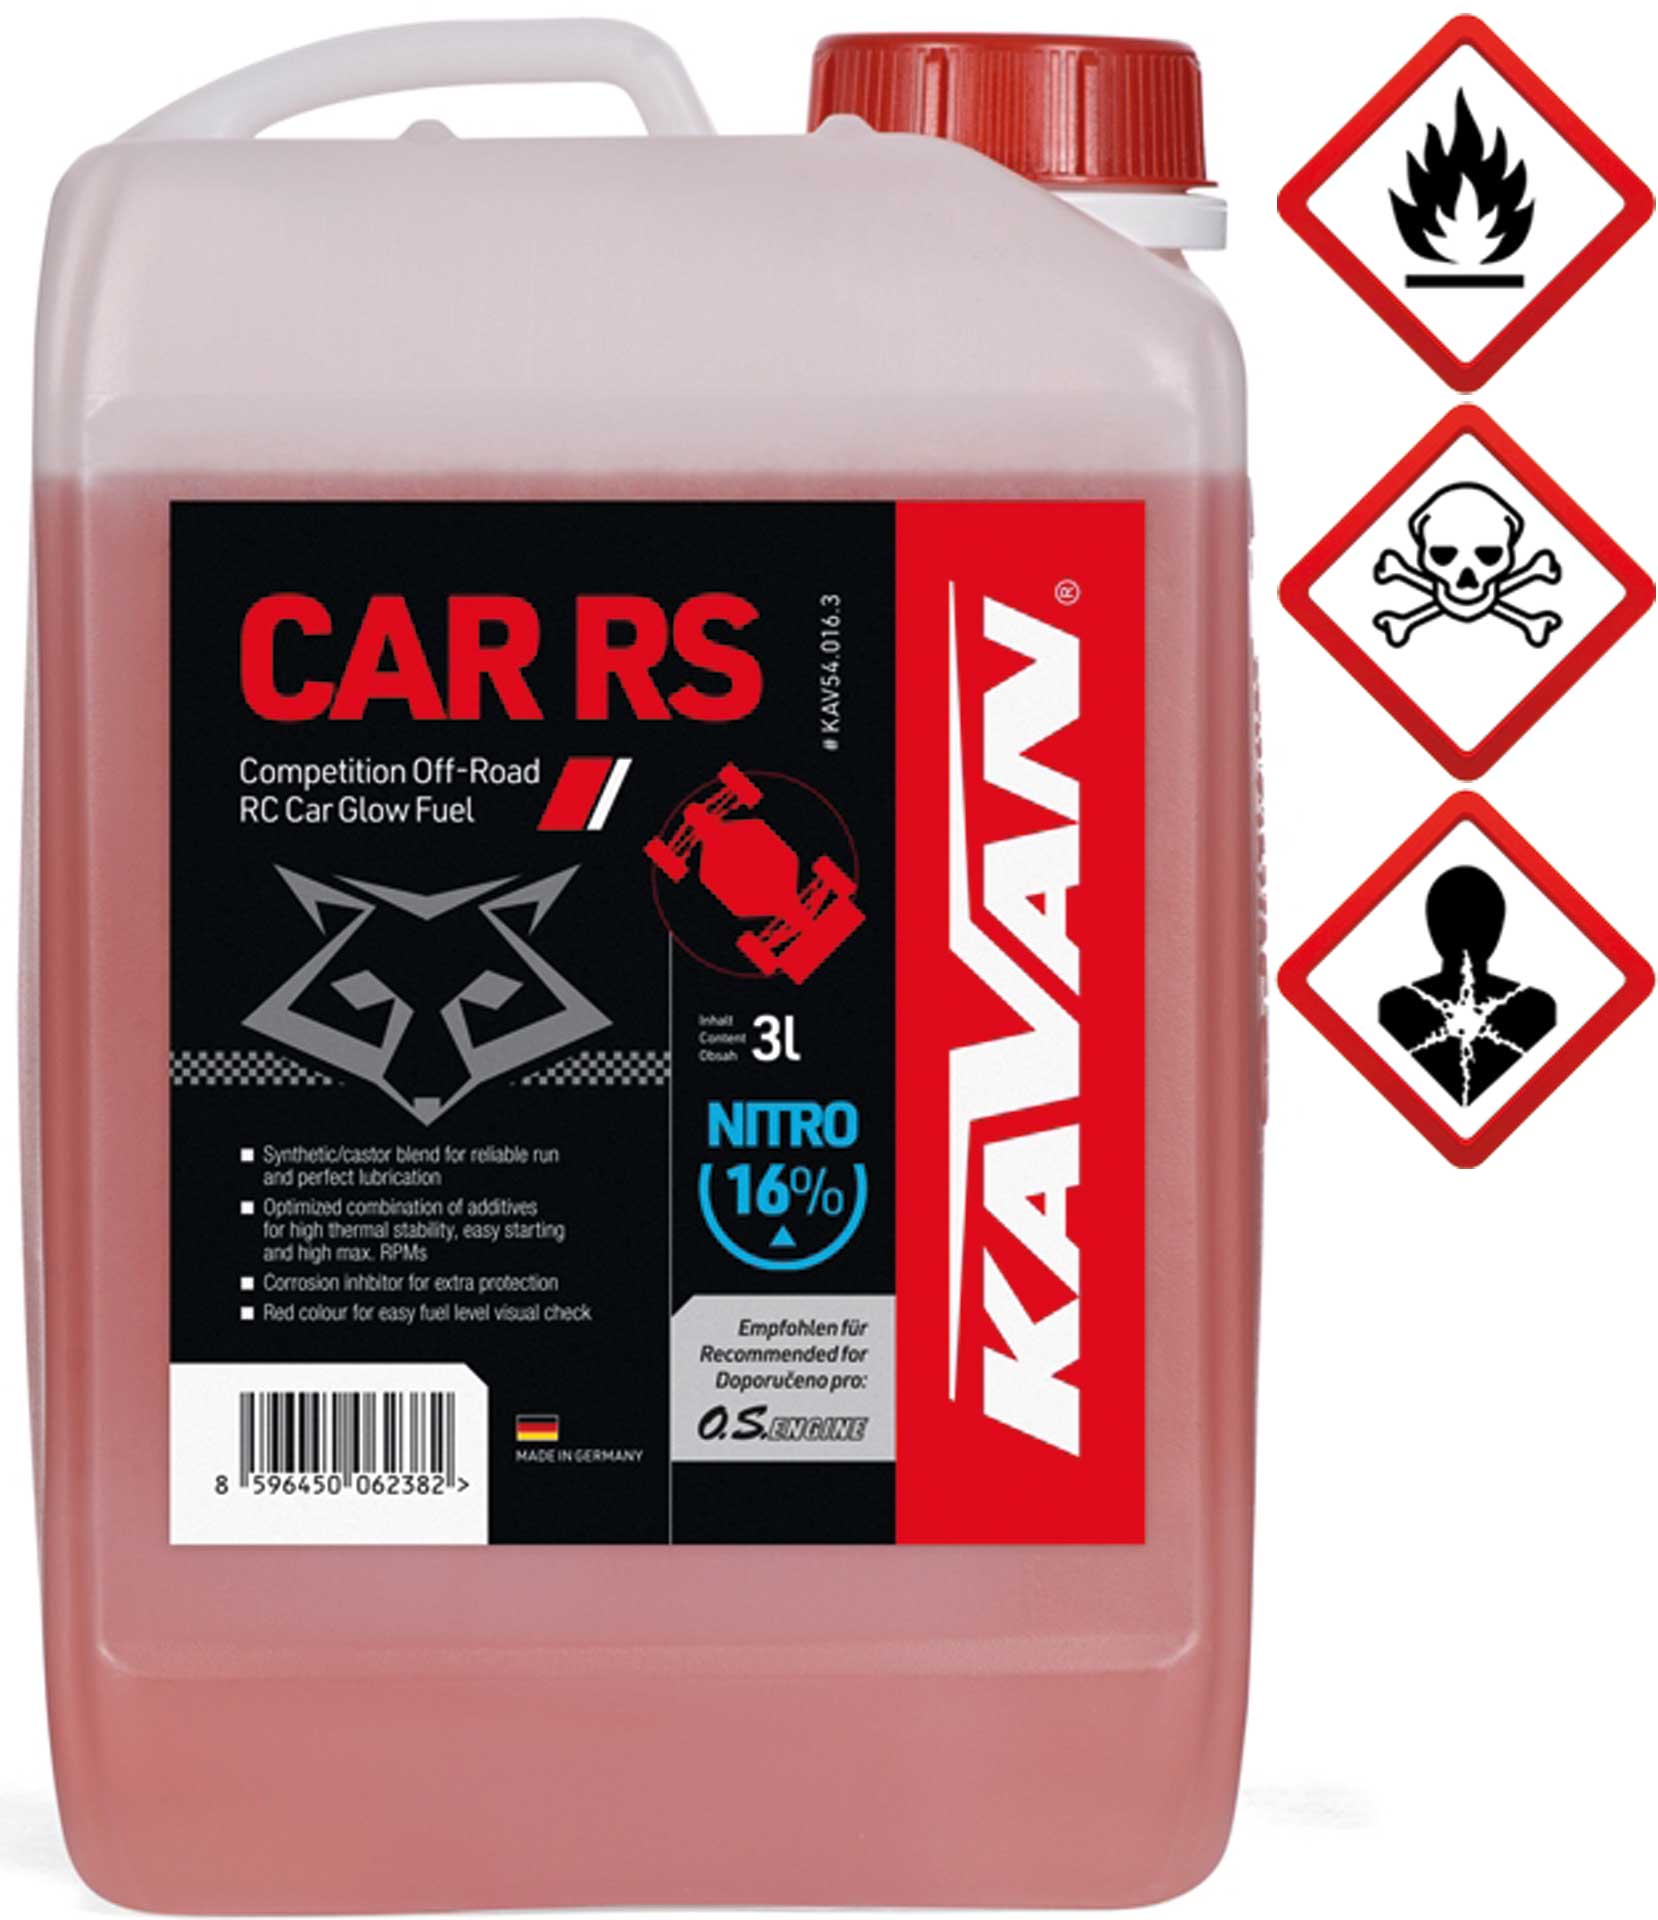 KAVAN Car RS 16% Off Road Nitro 3 litres Carburant, essence, carburant pour moteurs à allumage par incandescence